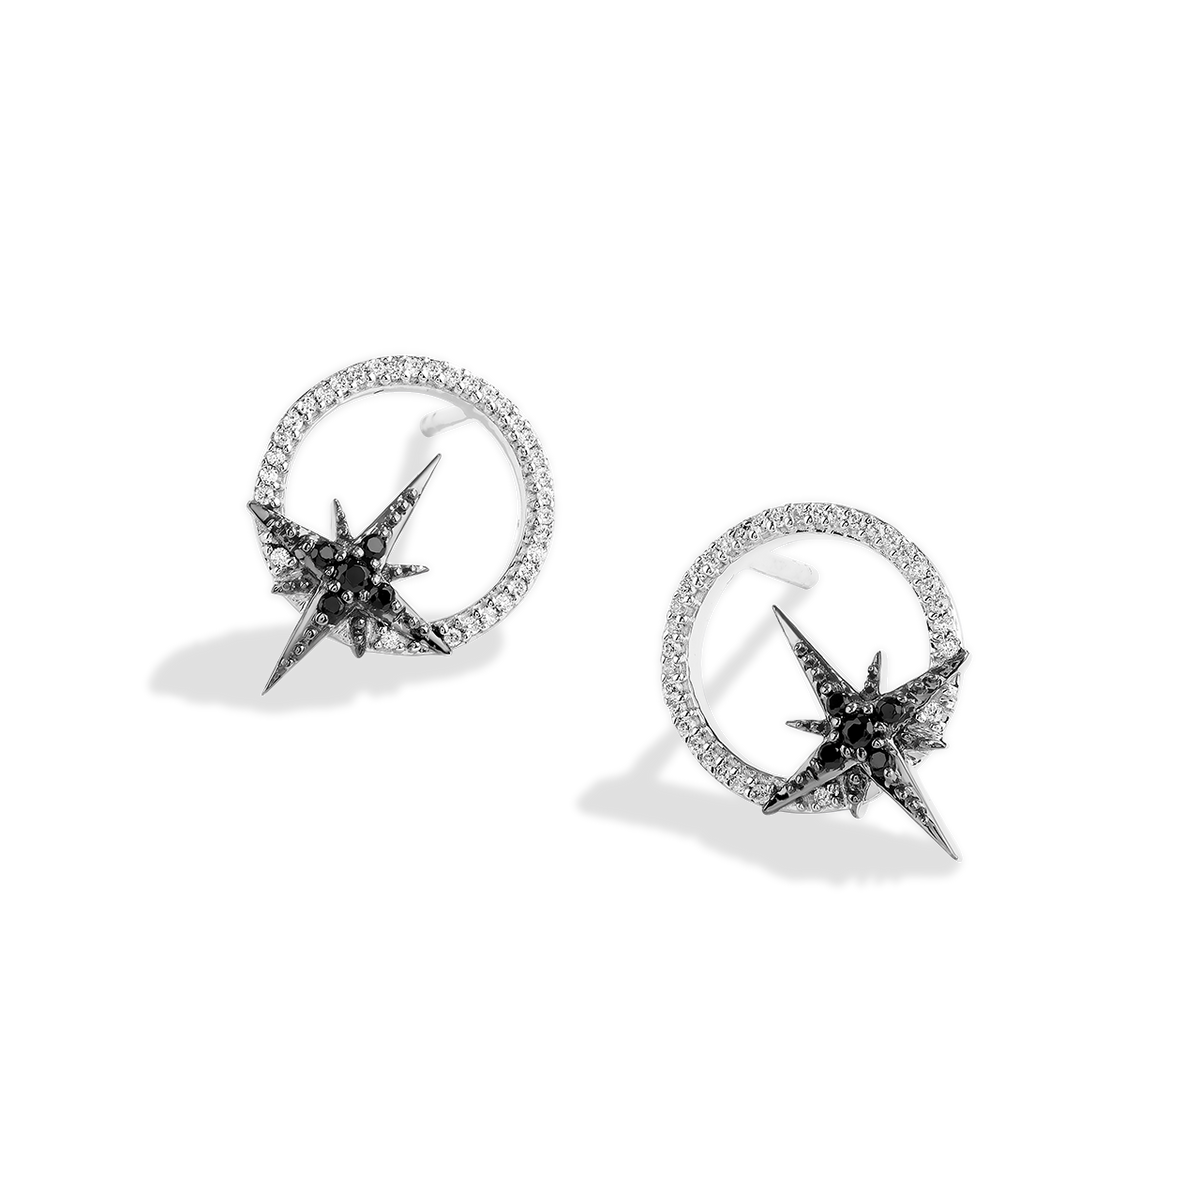 Black Diamond Studs, Black Diamond Star Stud Earrings, 14k Gold, Rose Gold,  White Gold, Dainty Black Diamond Earrings Black Diamond Earrings - Etsy UK